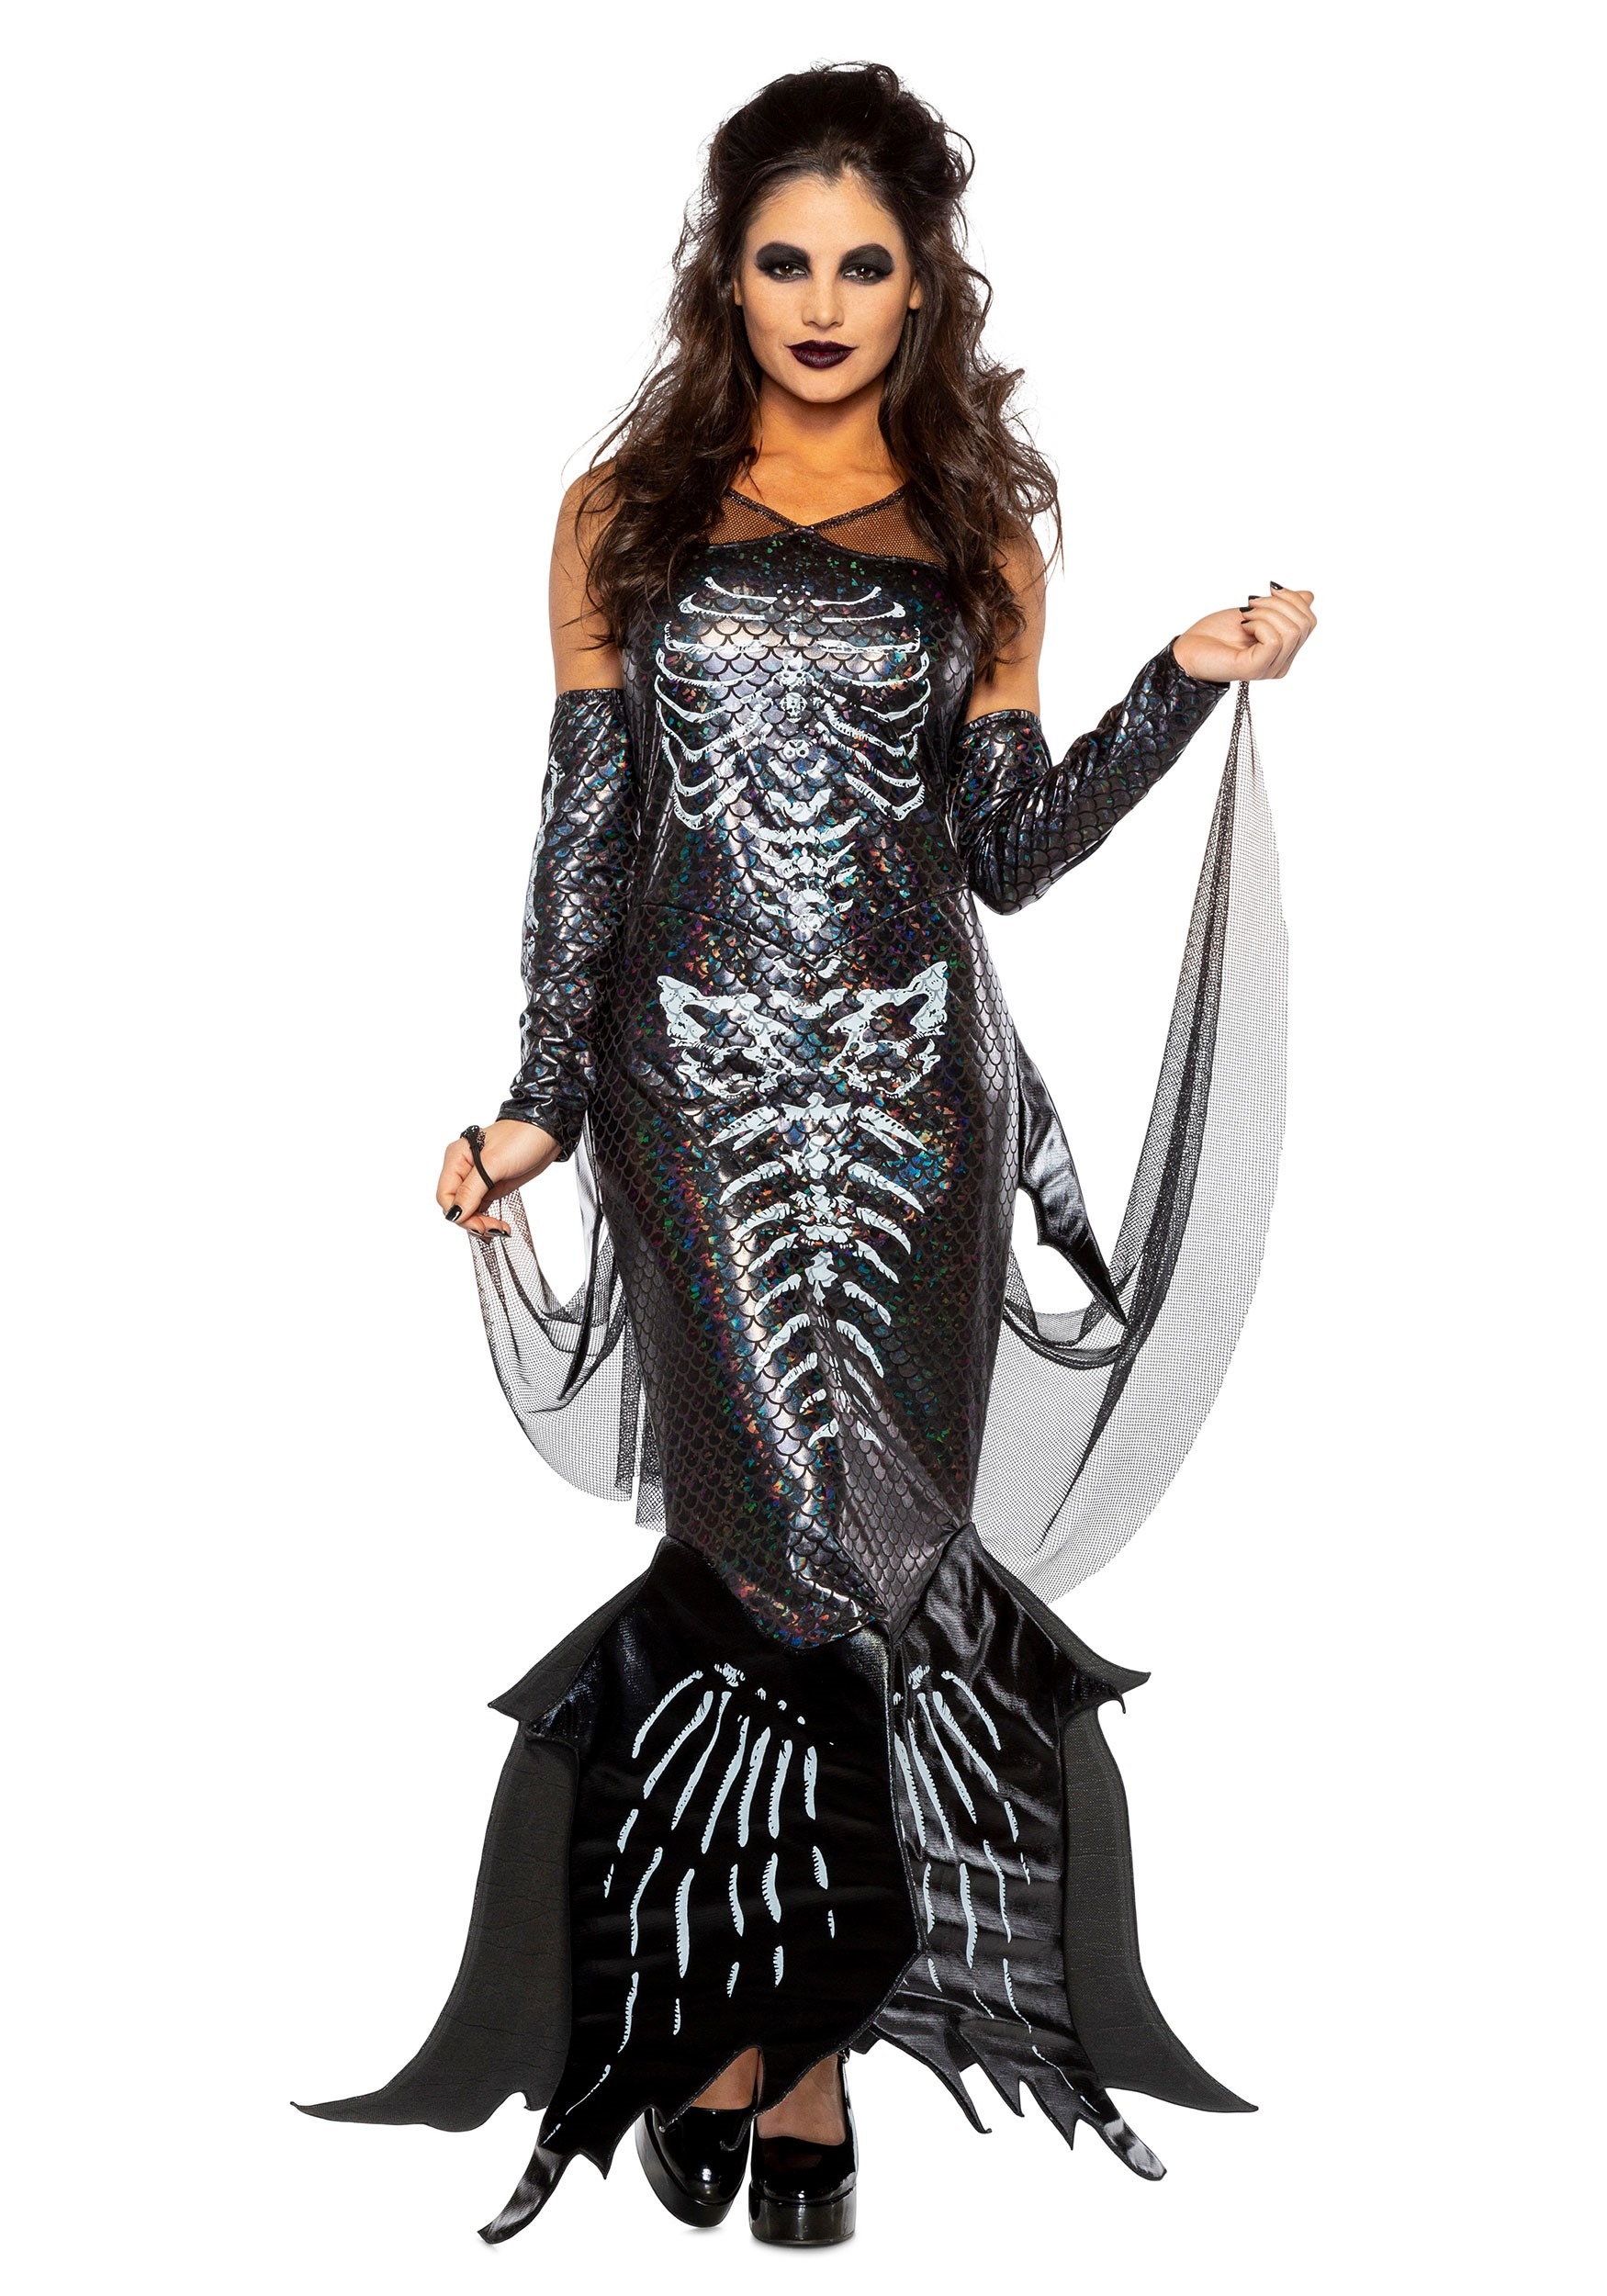 8.) Women's Glamour Skeleton Mermaid Costume